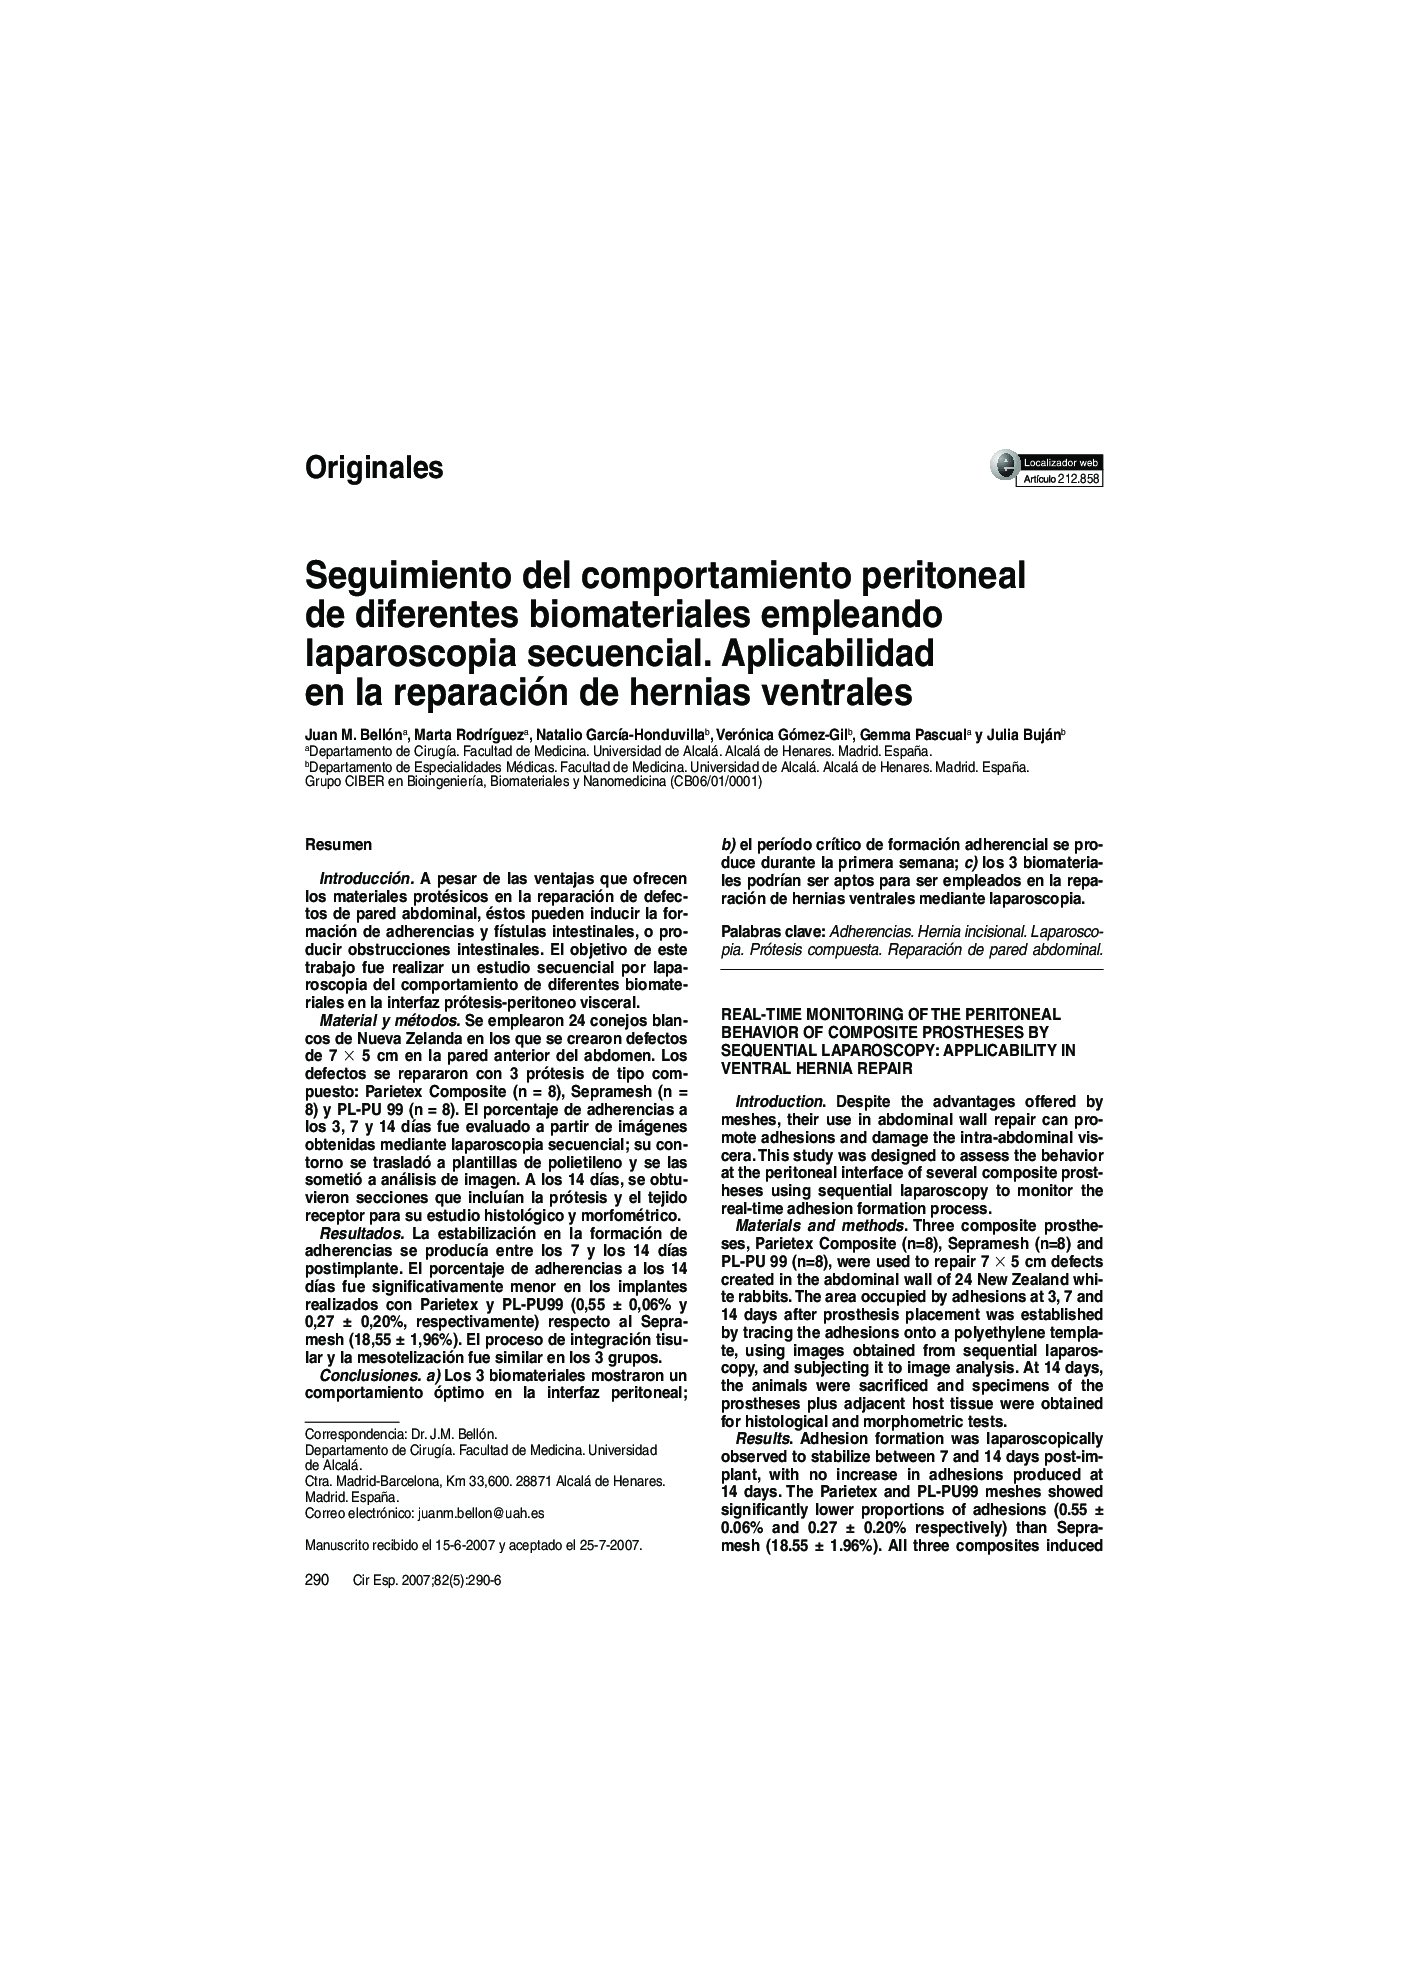 Seguimiento del comportamiento peritoneal de diferentes biomateriales empleando laparoscopia secuencial. Aplicabilidad en la reparación de hernias ventrales